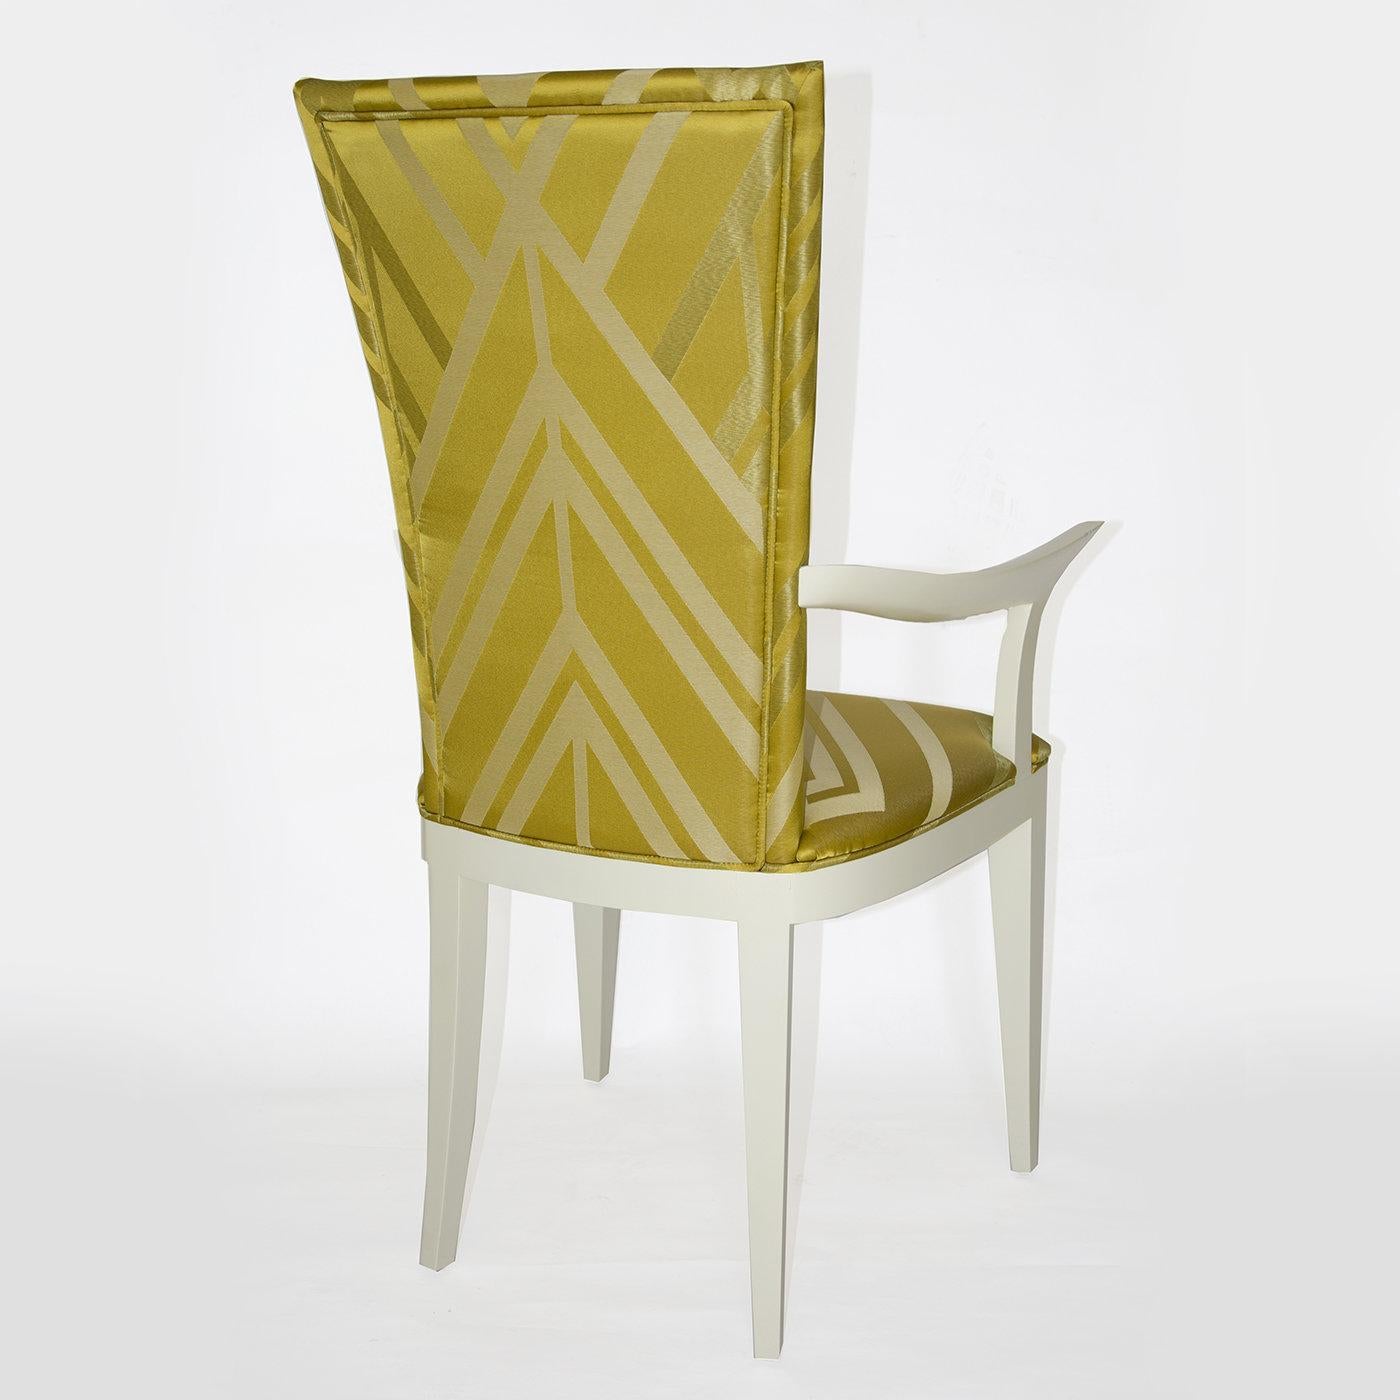 Der Classic Deco Chair mit Armlehnen ist ein hochwertiges Möbelstück, das sich durch den eleganten Mix aus elfenbeinfarbener Stoffpolsterung und weißem Holzgestell auszeichnet. Dieses Design macht ihn zu einem hervorragenden Sessel für jedes